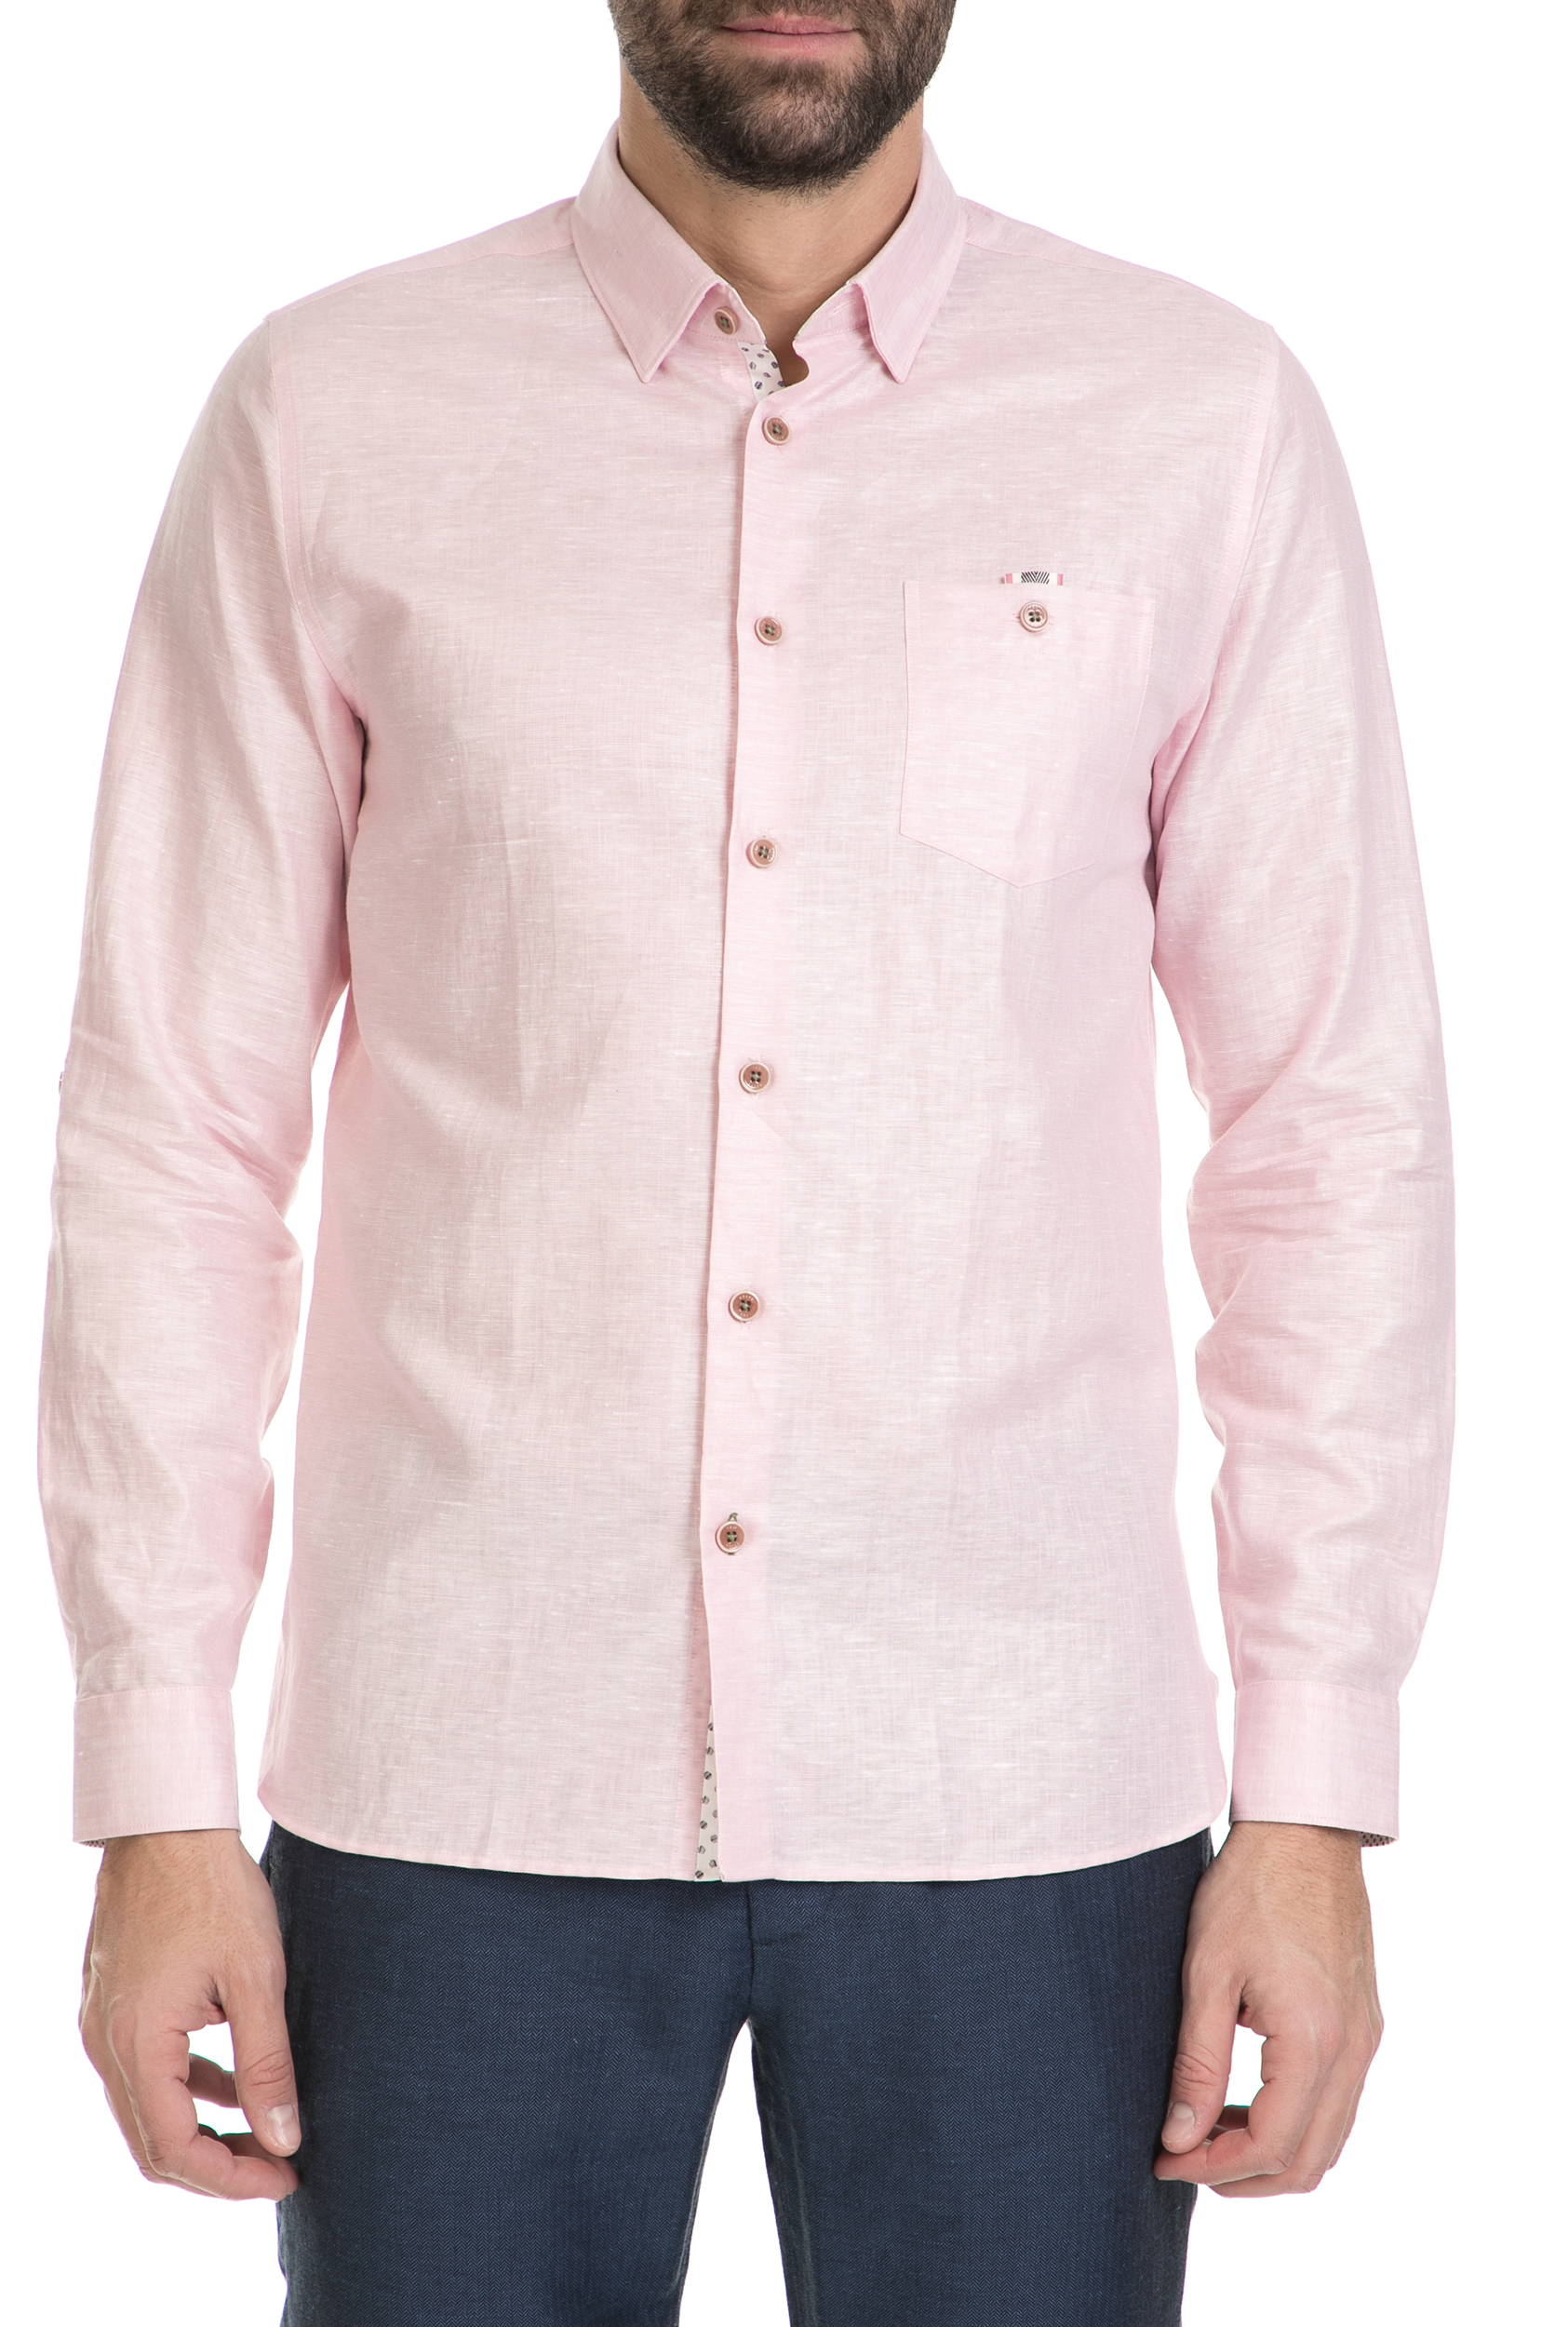 TED BAKER – Ανδρικό λινό πουκάμισο TED BAKER ροζ 1612252.0-00P7